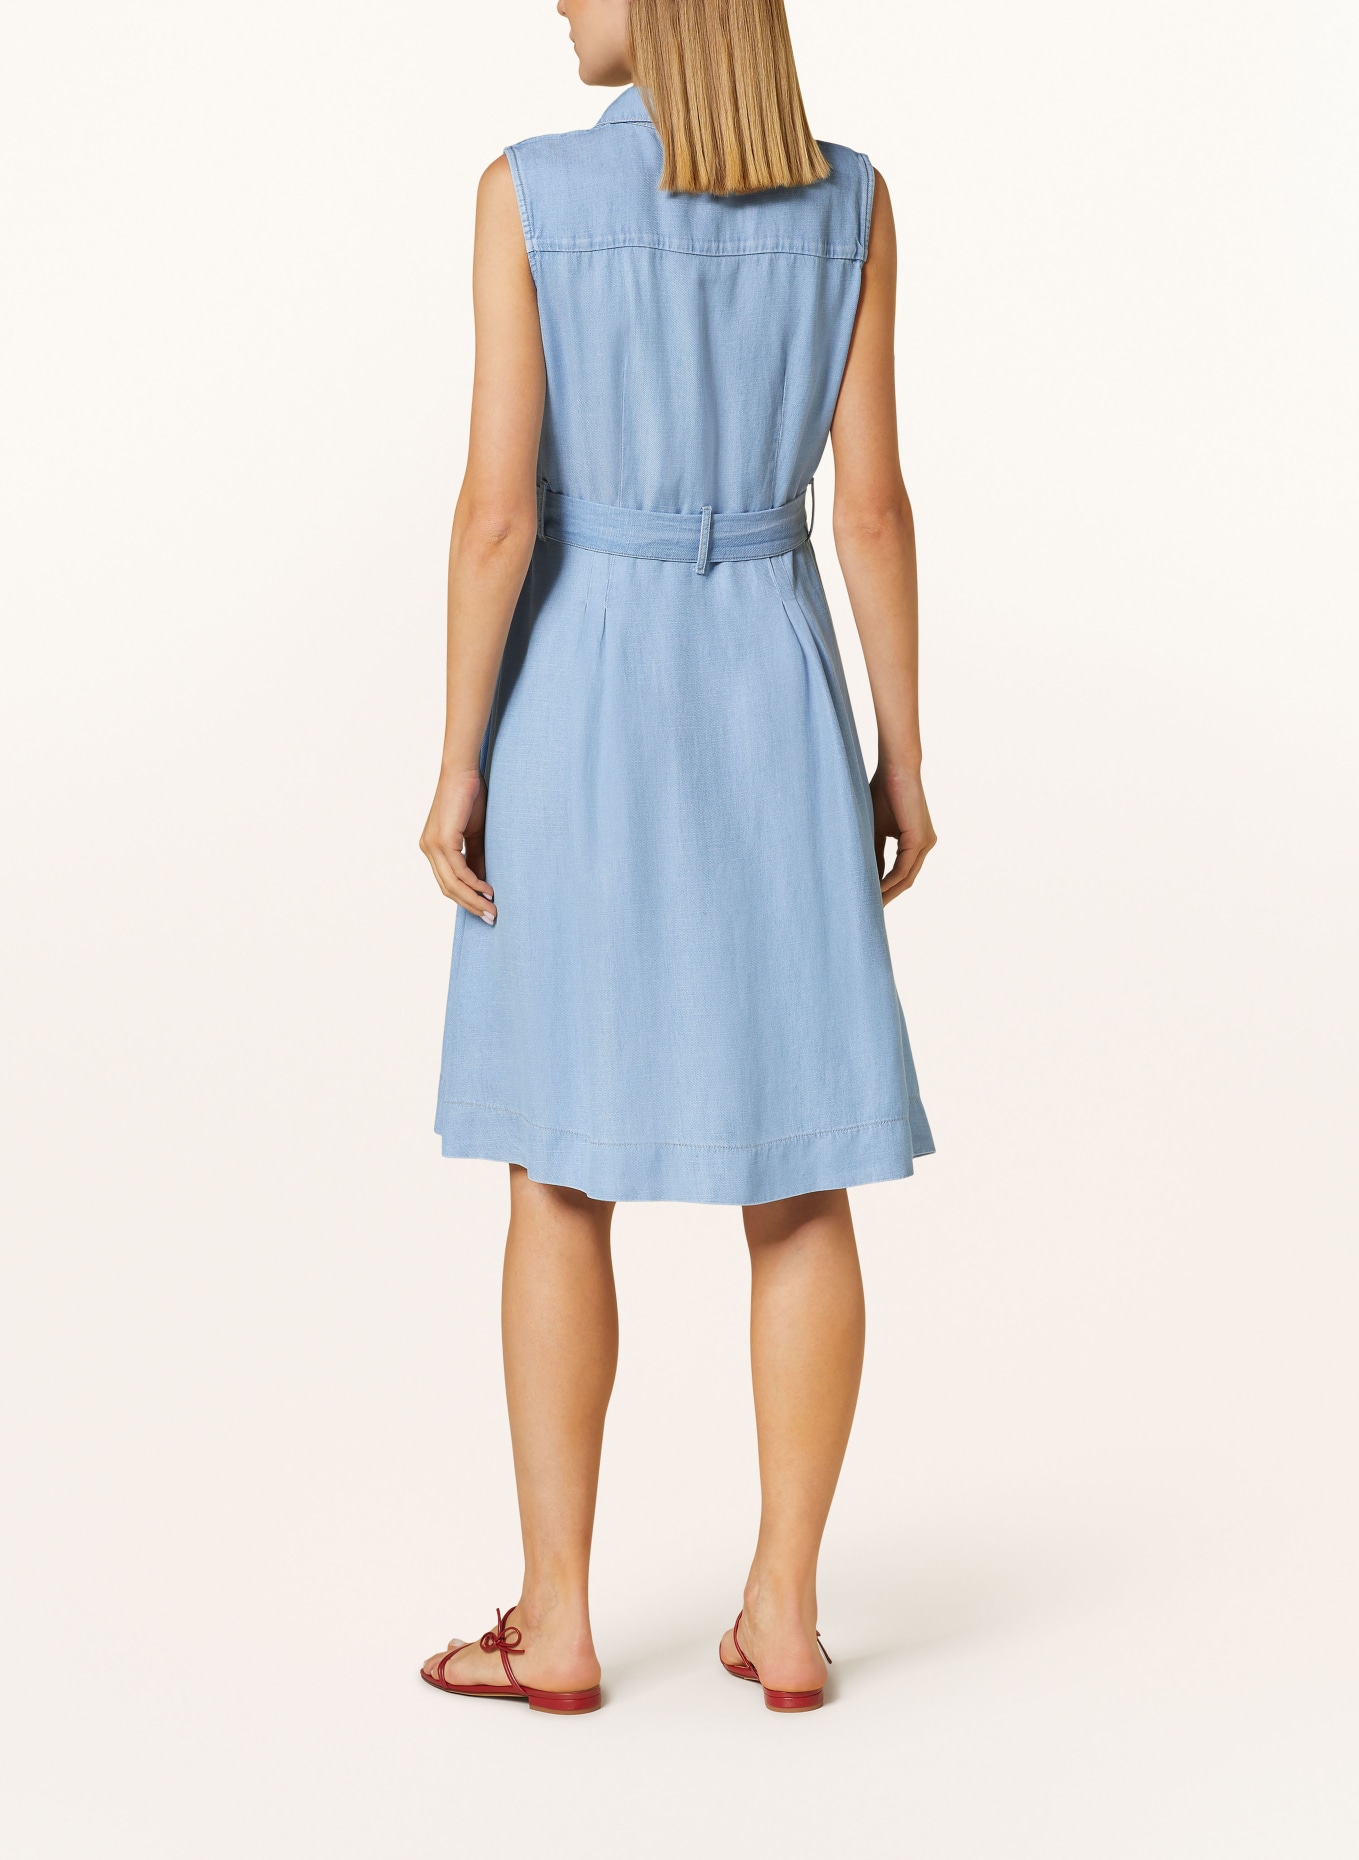 MORE & MORE Dress in denim look, Color: LIGHT BLUE (Image 3)